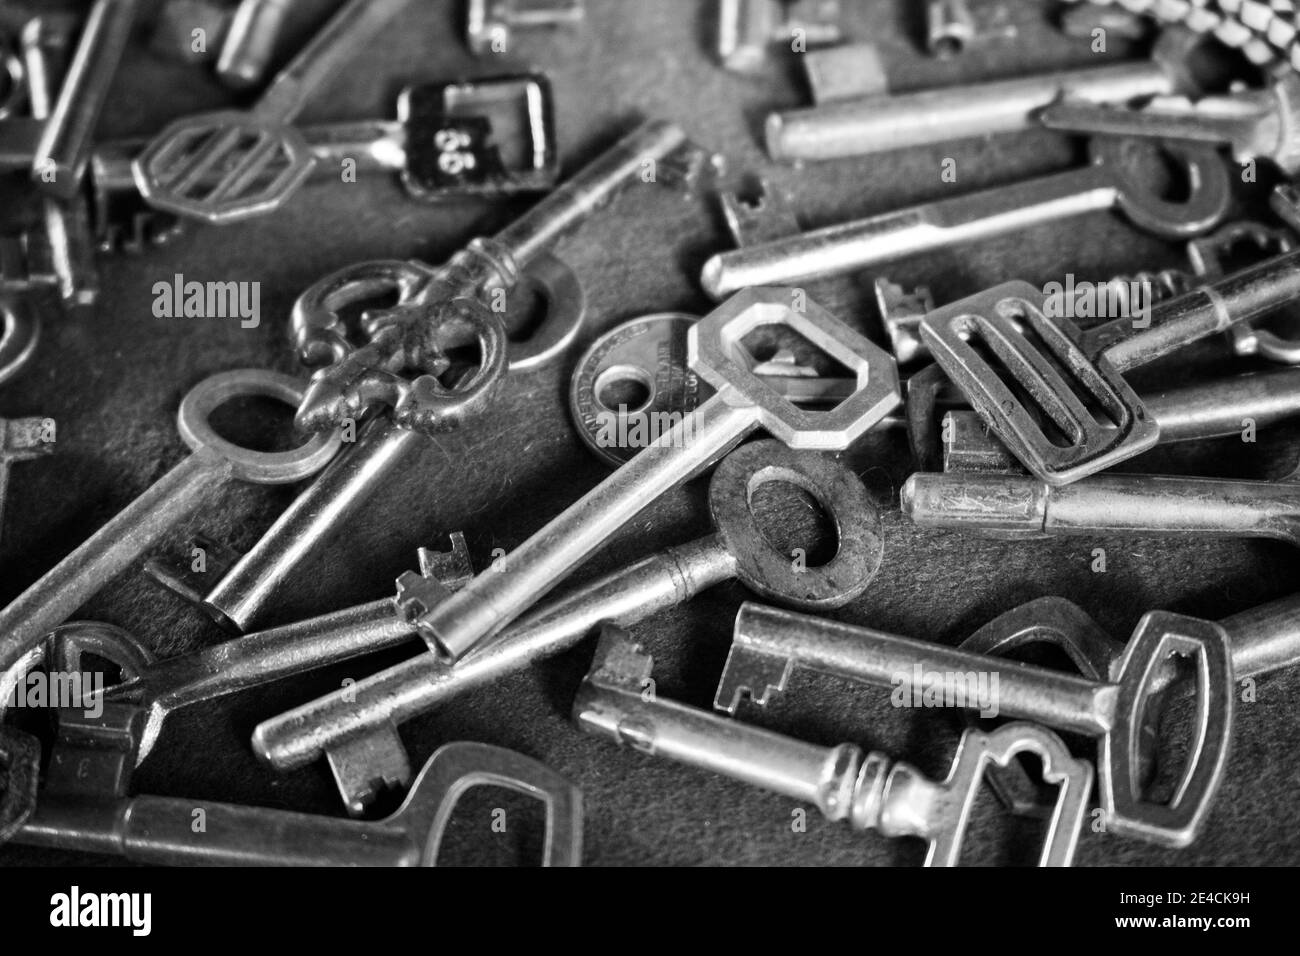 Sao Paulo / Sao Paulo / Brasile - 08 19 2018: Gruppo di diverse vecchie chiavi antiche insieme. Sembra essere un mercato delle pulci o una vecchia fabbrica di porte aperte Foto Stock